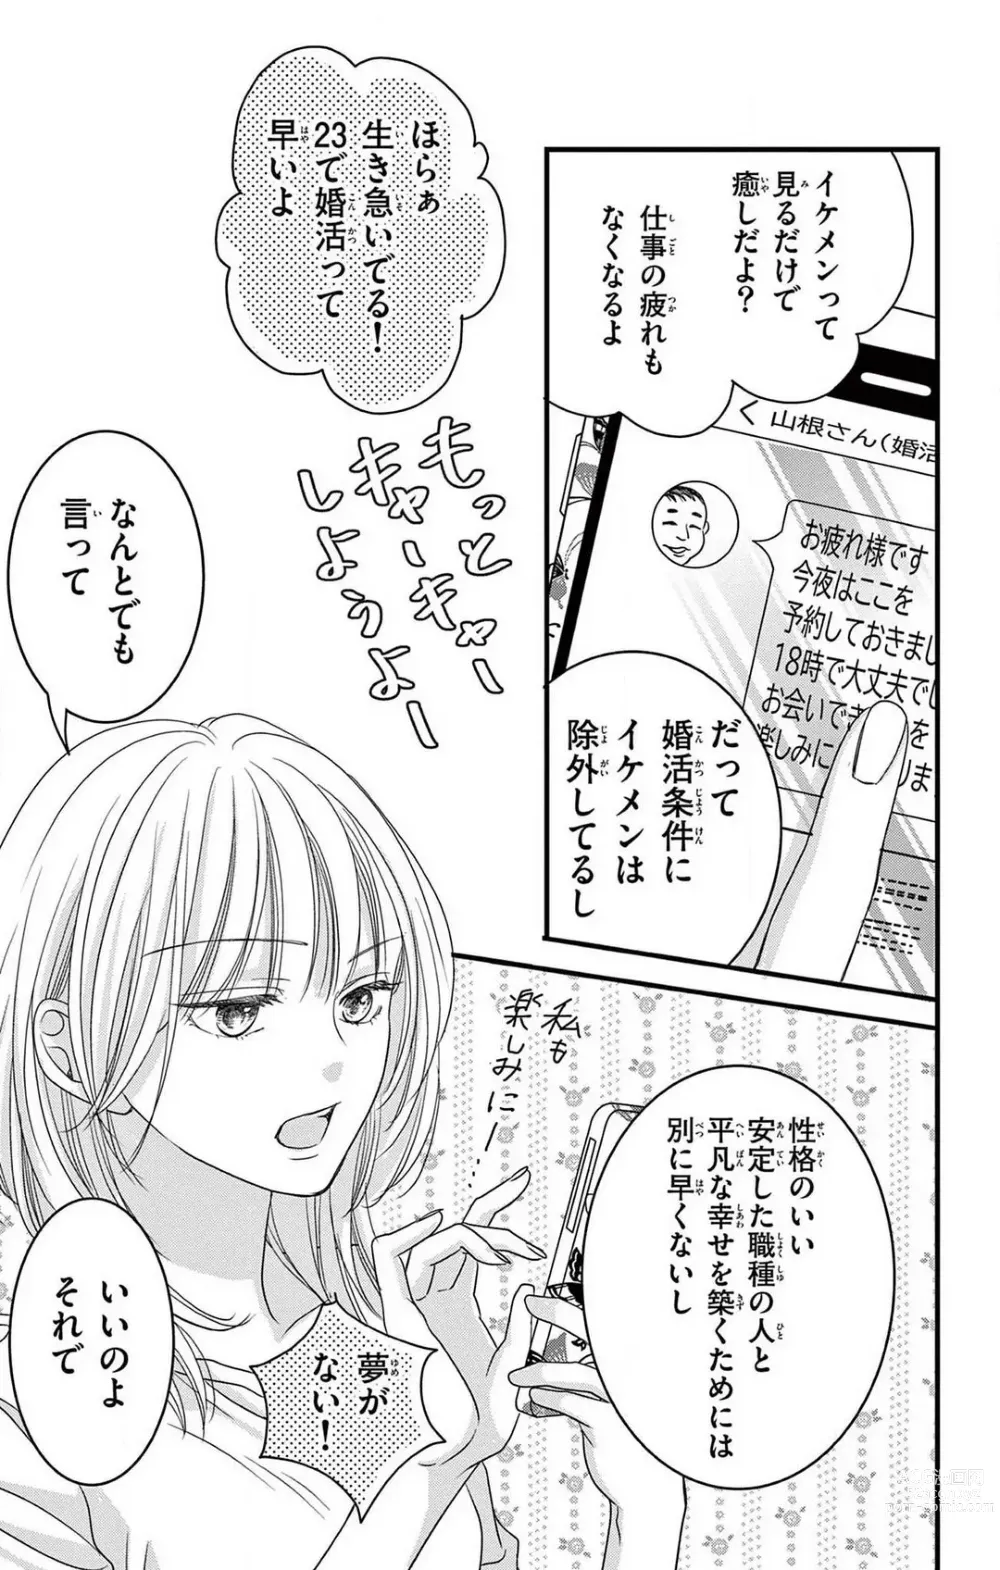 Page 3 of manga Kuzu wa Kuzu Demo Kao ga ii Kuzu 1-7